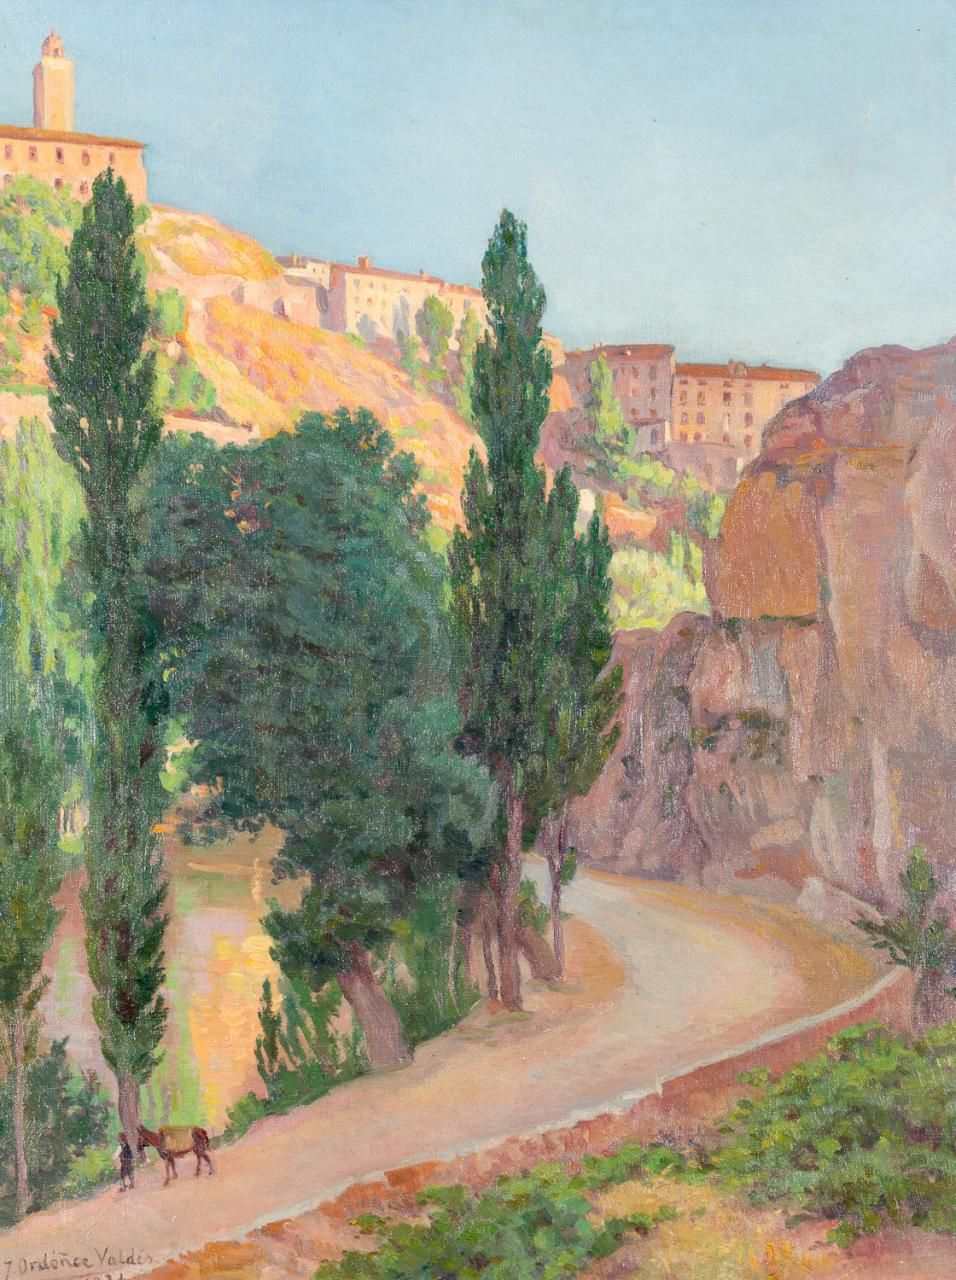 JOSÉ ORDÓÑEZ VALDÉS (Huelva, 1873 - 1953) 风景
布面油画
72 x 56 cm
左下角有签名和日期："Ordoñez &hellip;